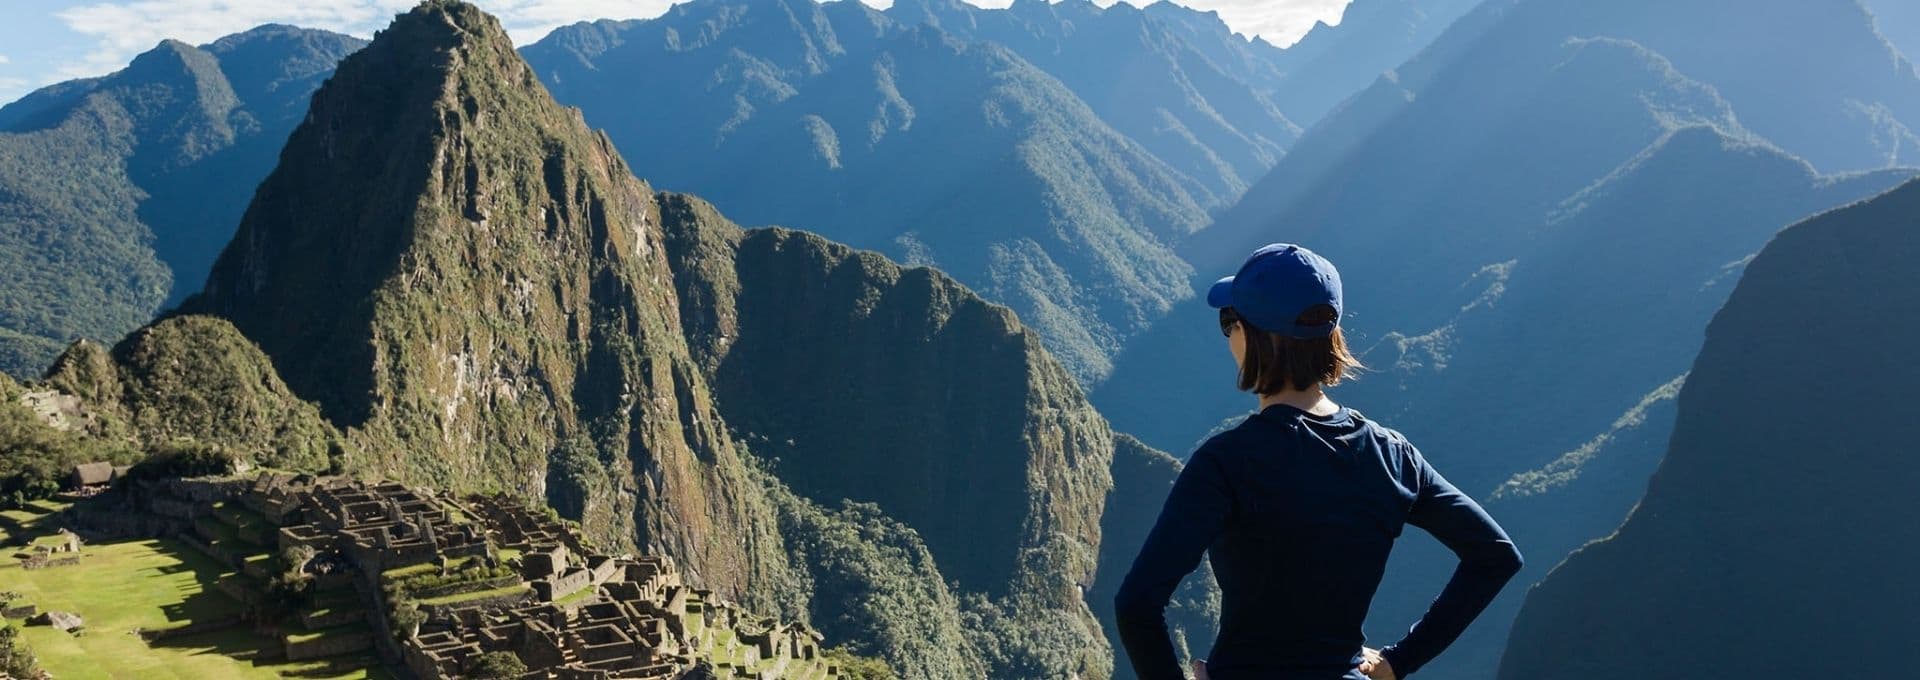 Hva er Machu Picchu kjent for?